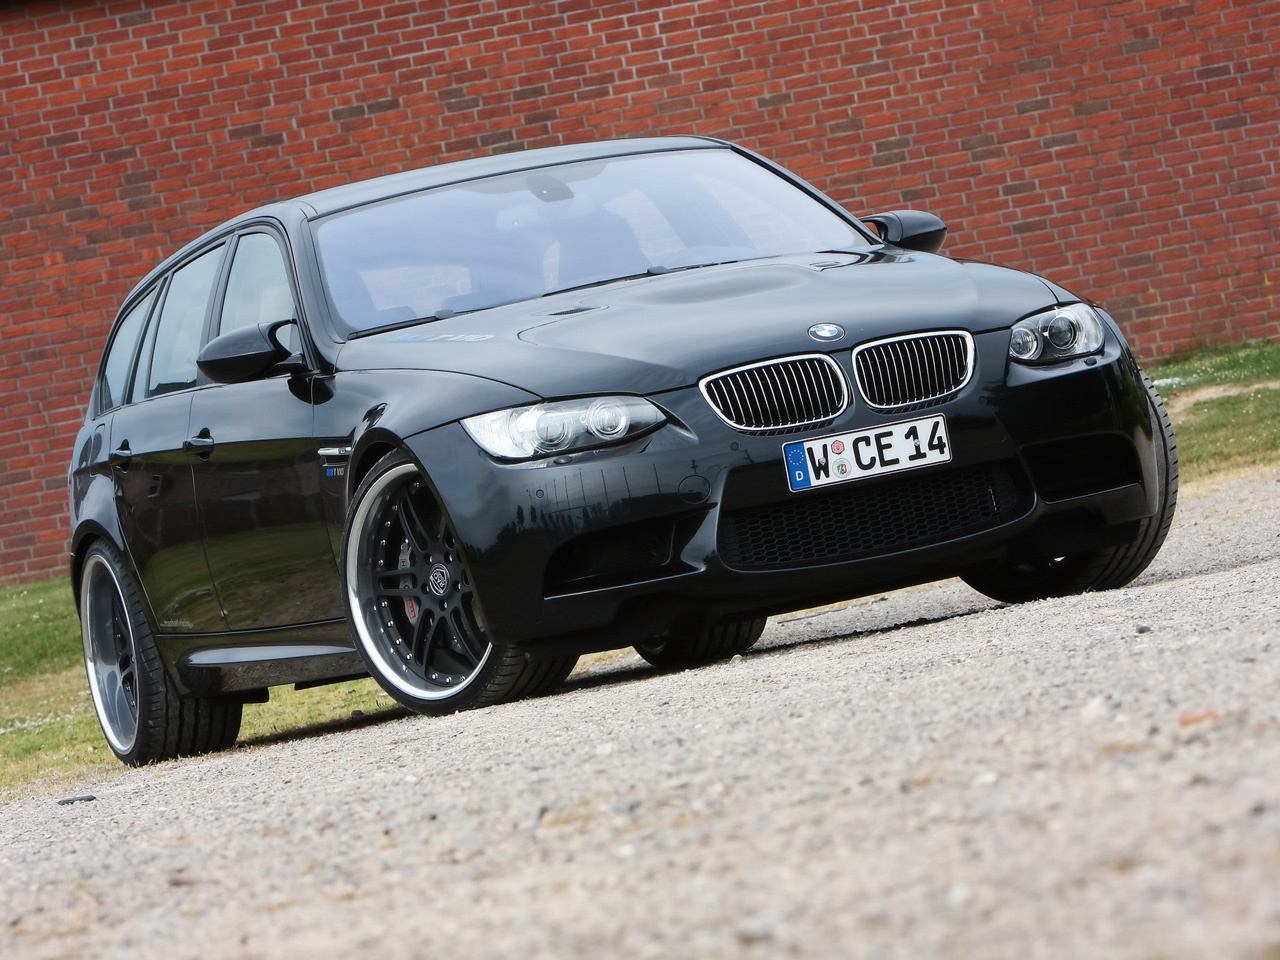 2010-Manhart-Racing-BMW-M3-E91-V10-Front-Angle-1280x960